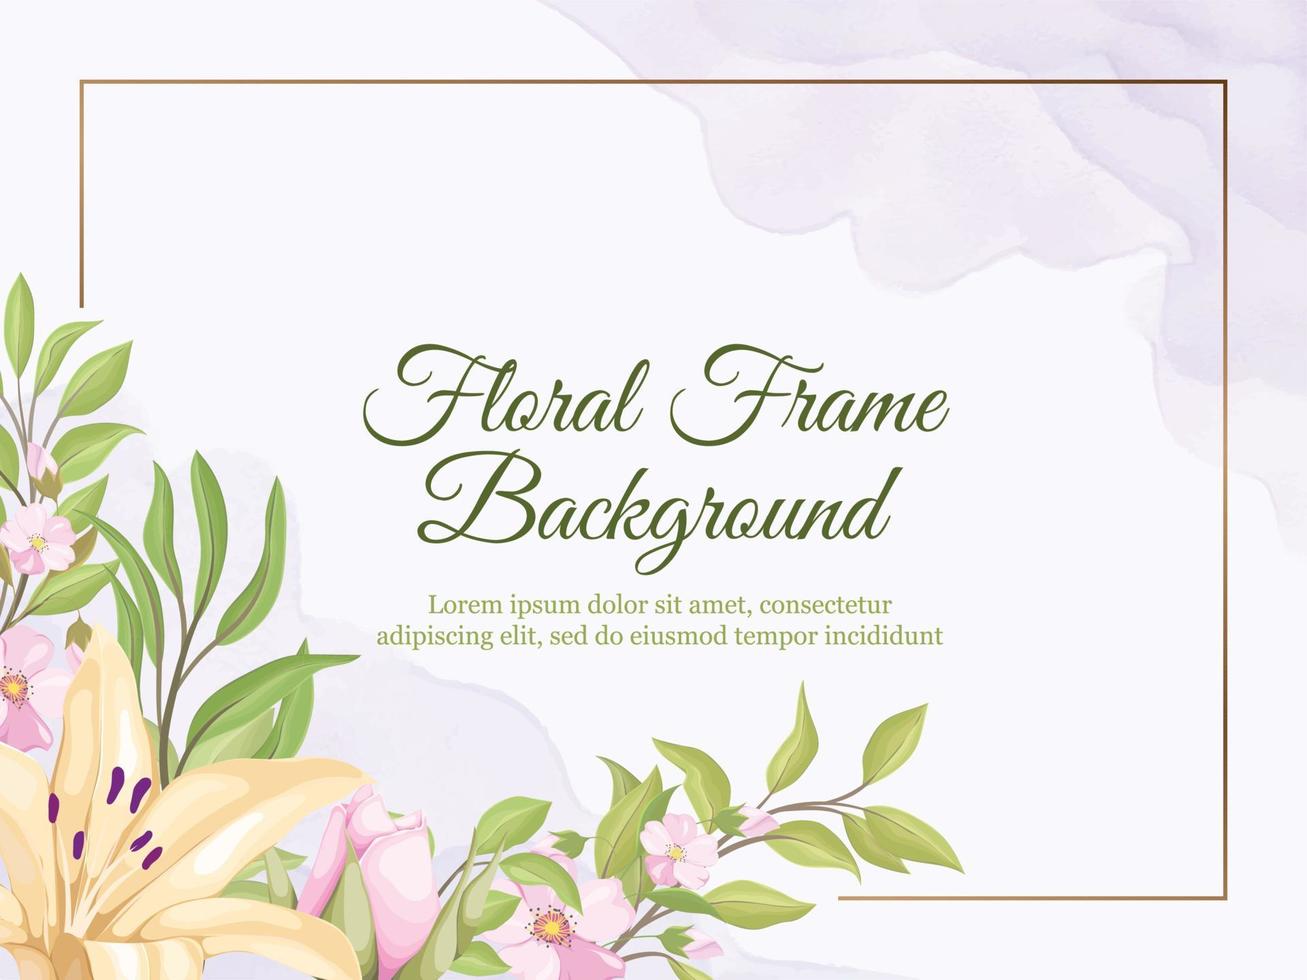 Fondo de banner de boda con diseño de vector floral y hoja